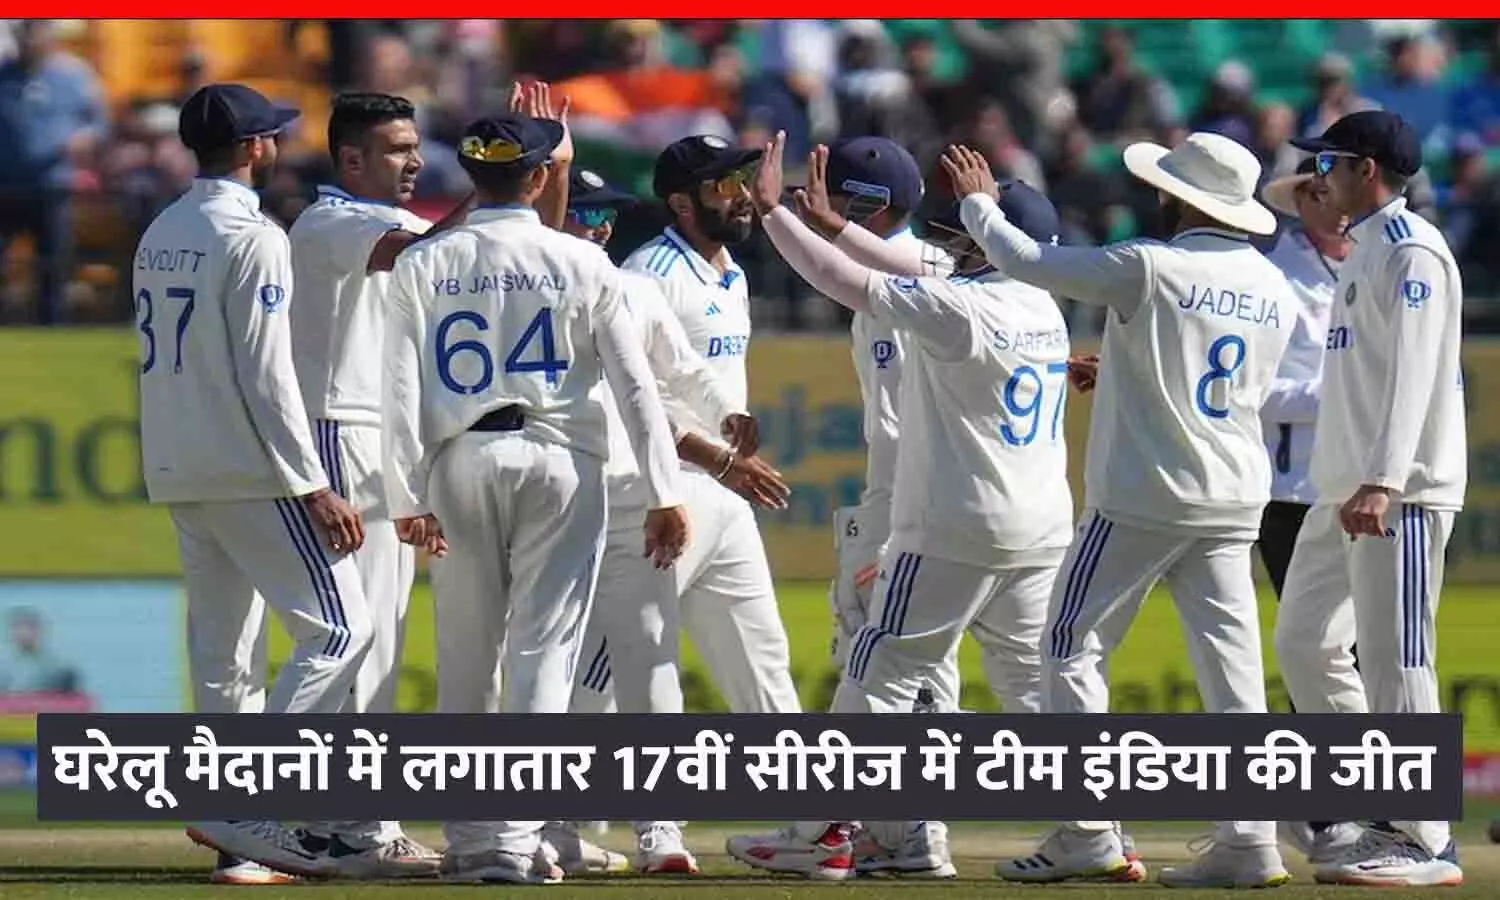 भारत ने इंग्लैंड से 4-1 से जीती सीरीज: धर्मशाला टेस्ट में इंग्लैंड को पारी और 64 रन से हराया, गिल-रोहित की सेंचुरी; कुलदीप बनें POTM